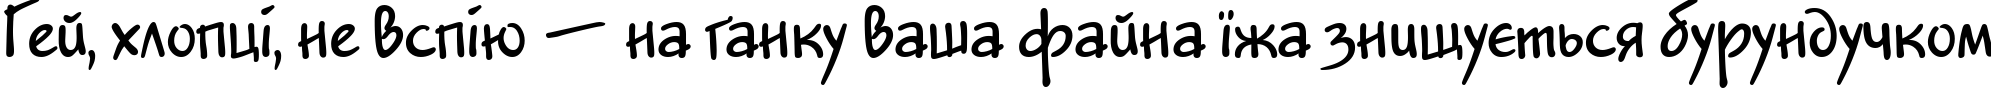 Пример написания шрифтом Jakob DP Normal текста на украинском